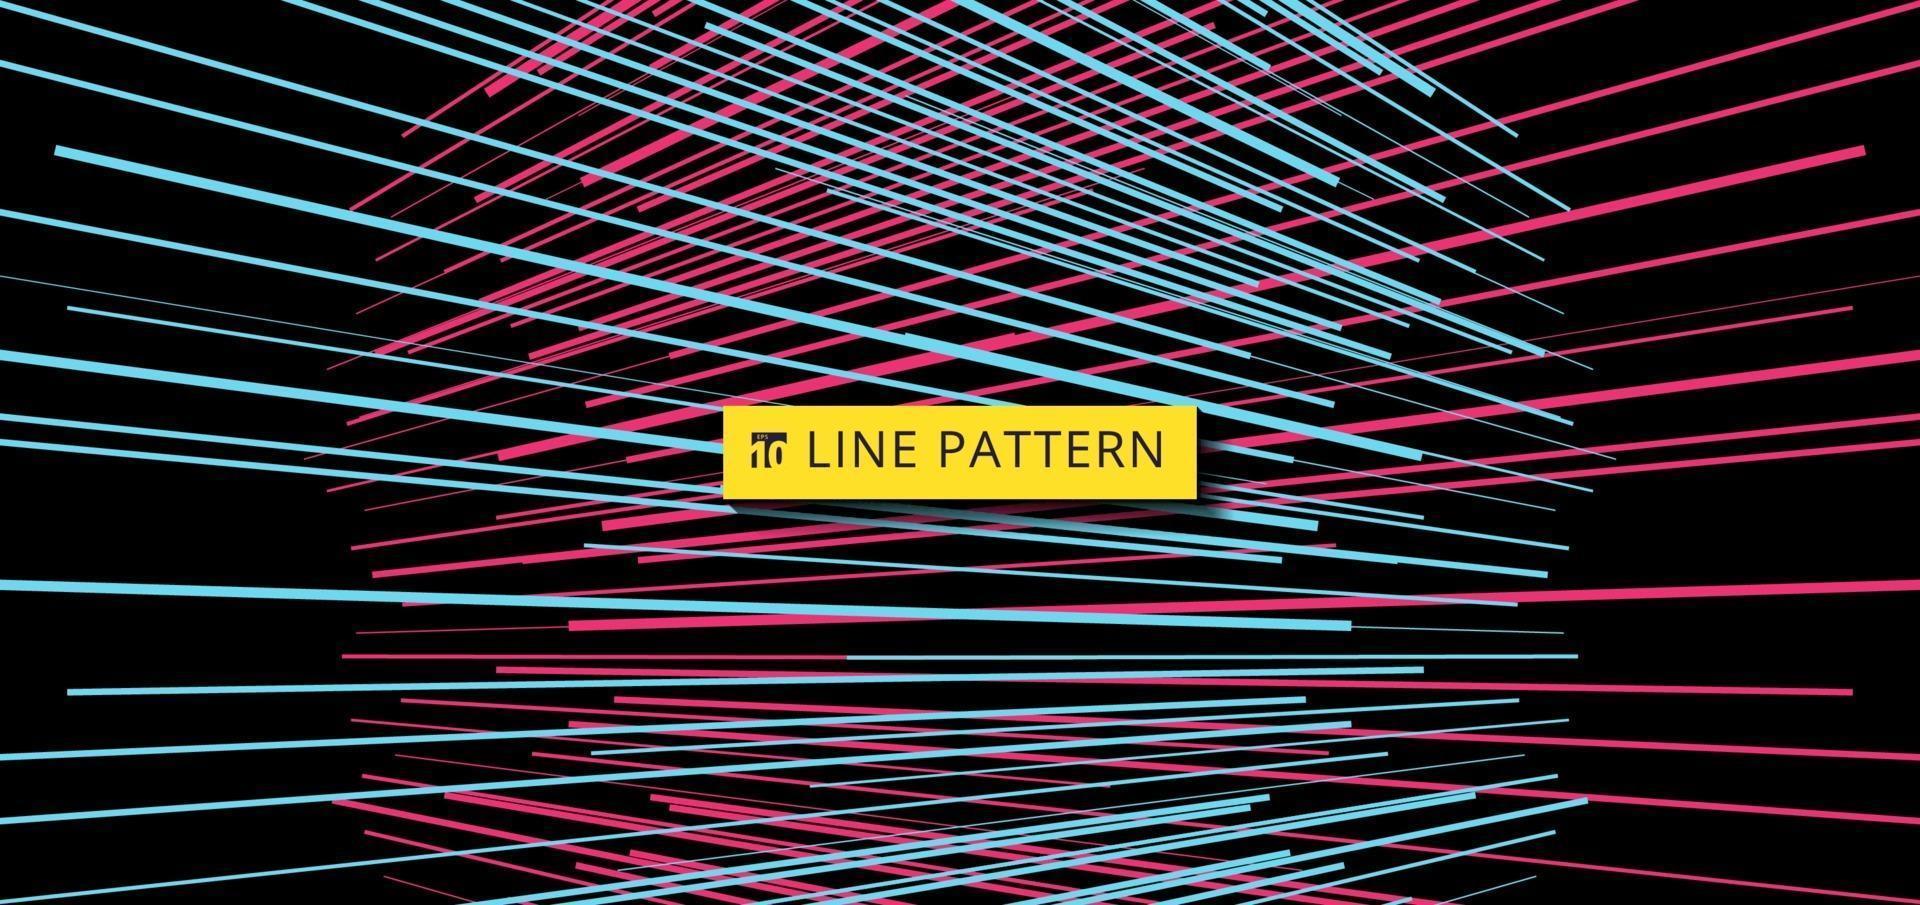 Resumen perspectiva de patrón de líneas de velocidad horizontal azul y rosa sobre fondo negro vector